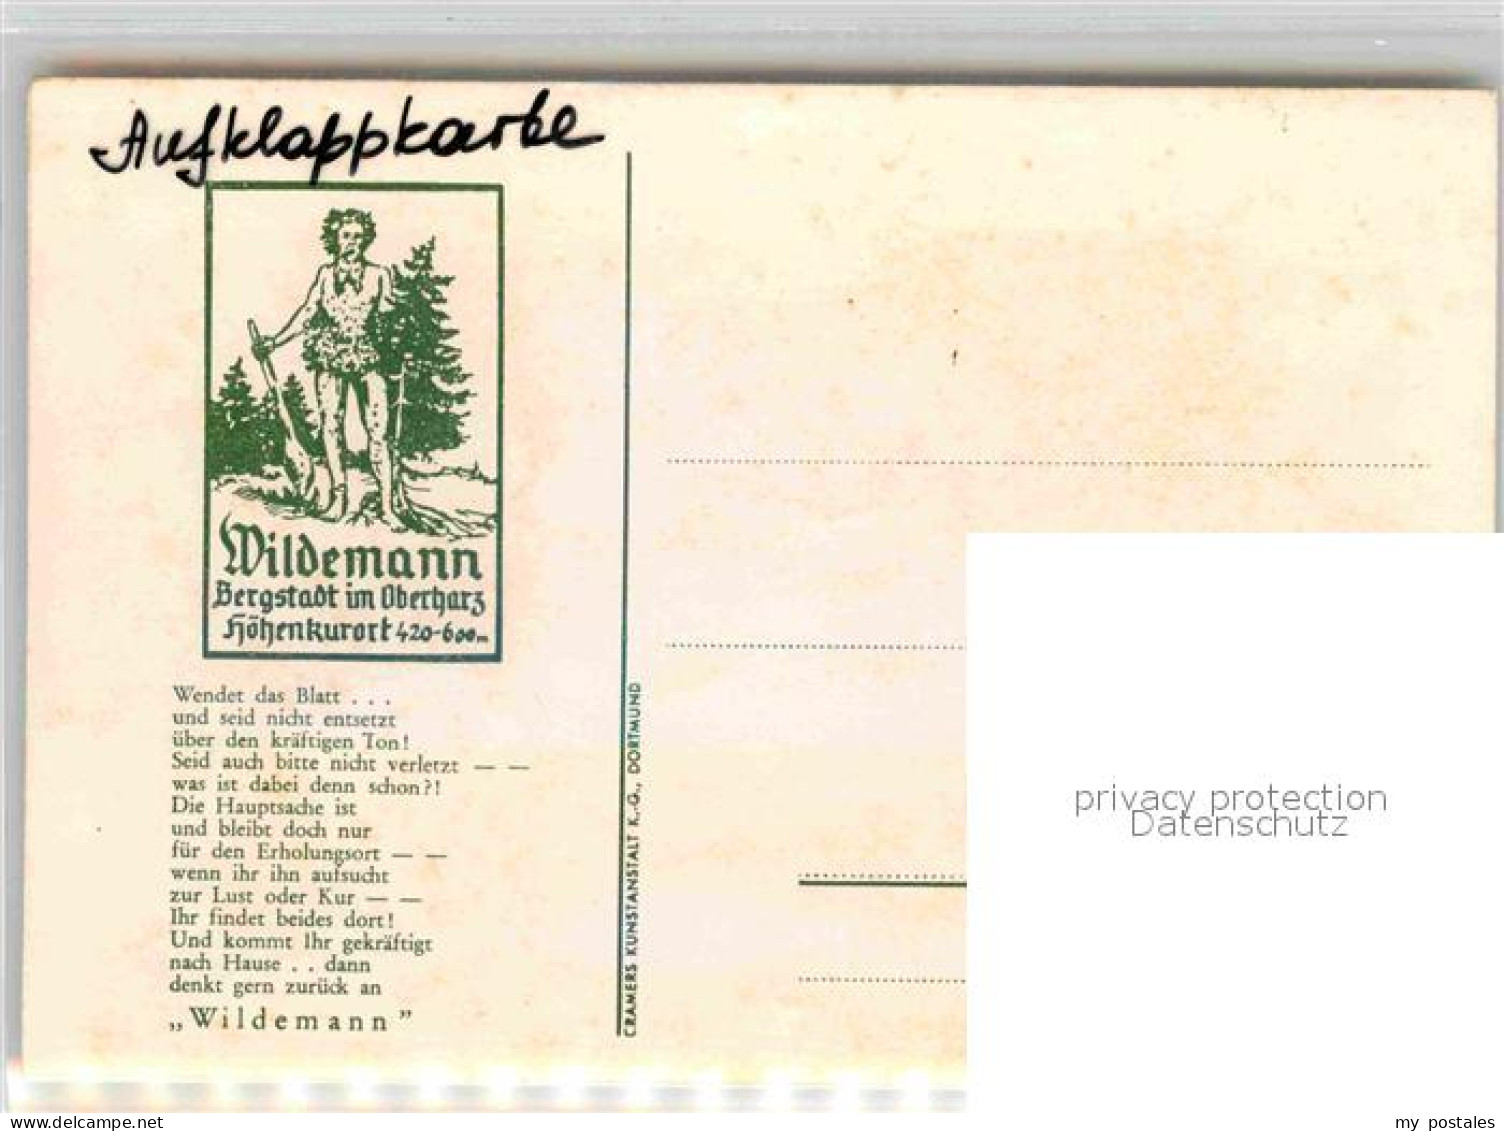 72796499 Wildemann Fliegeraufnahme Wildemann - Wildemann